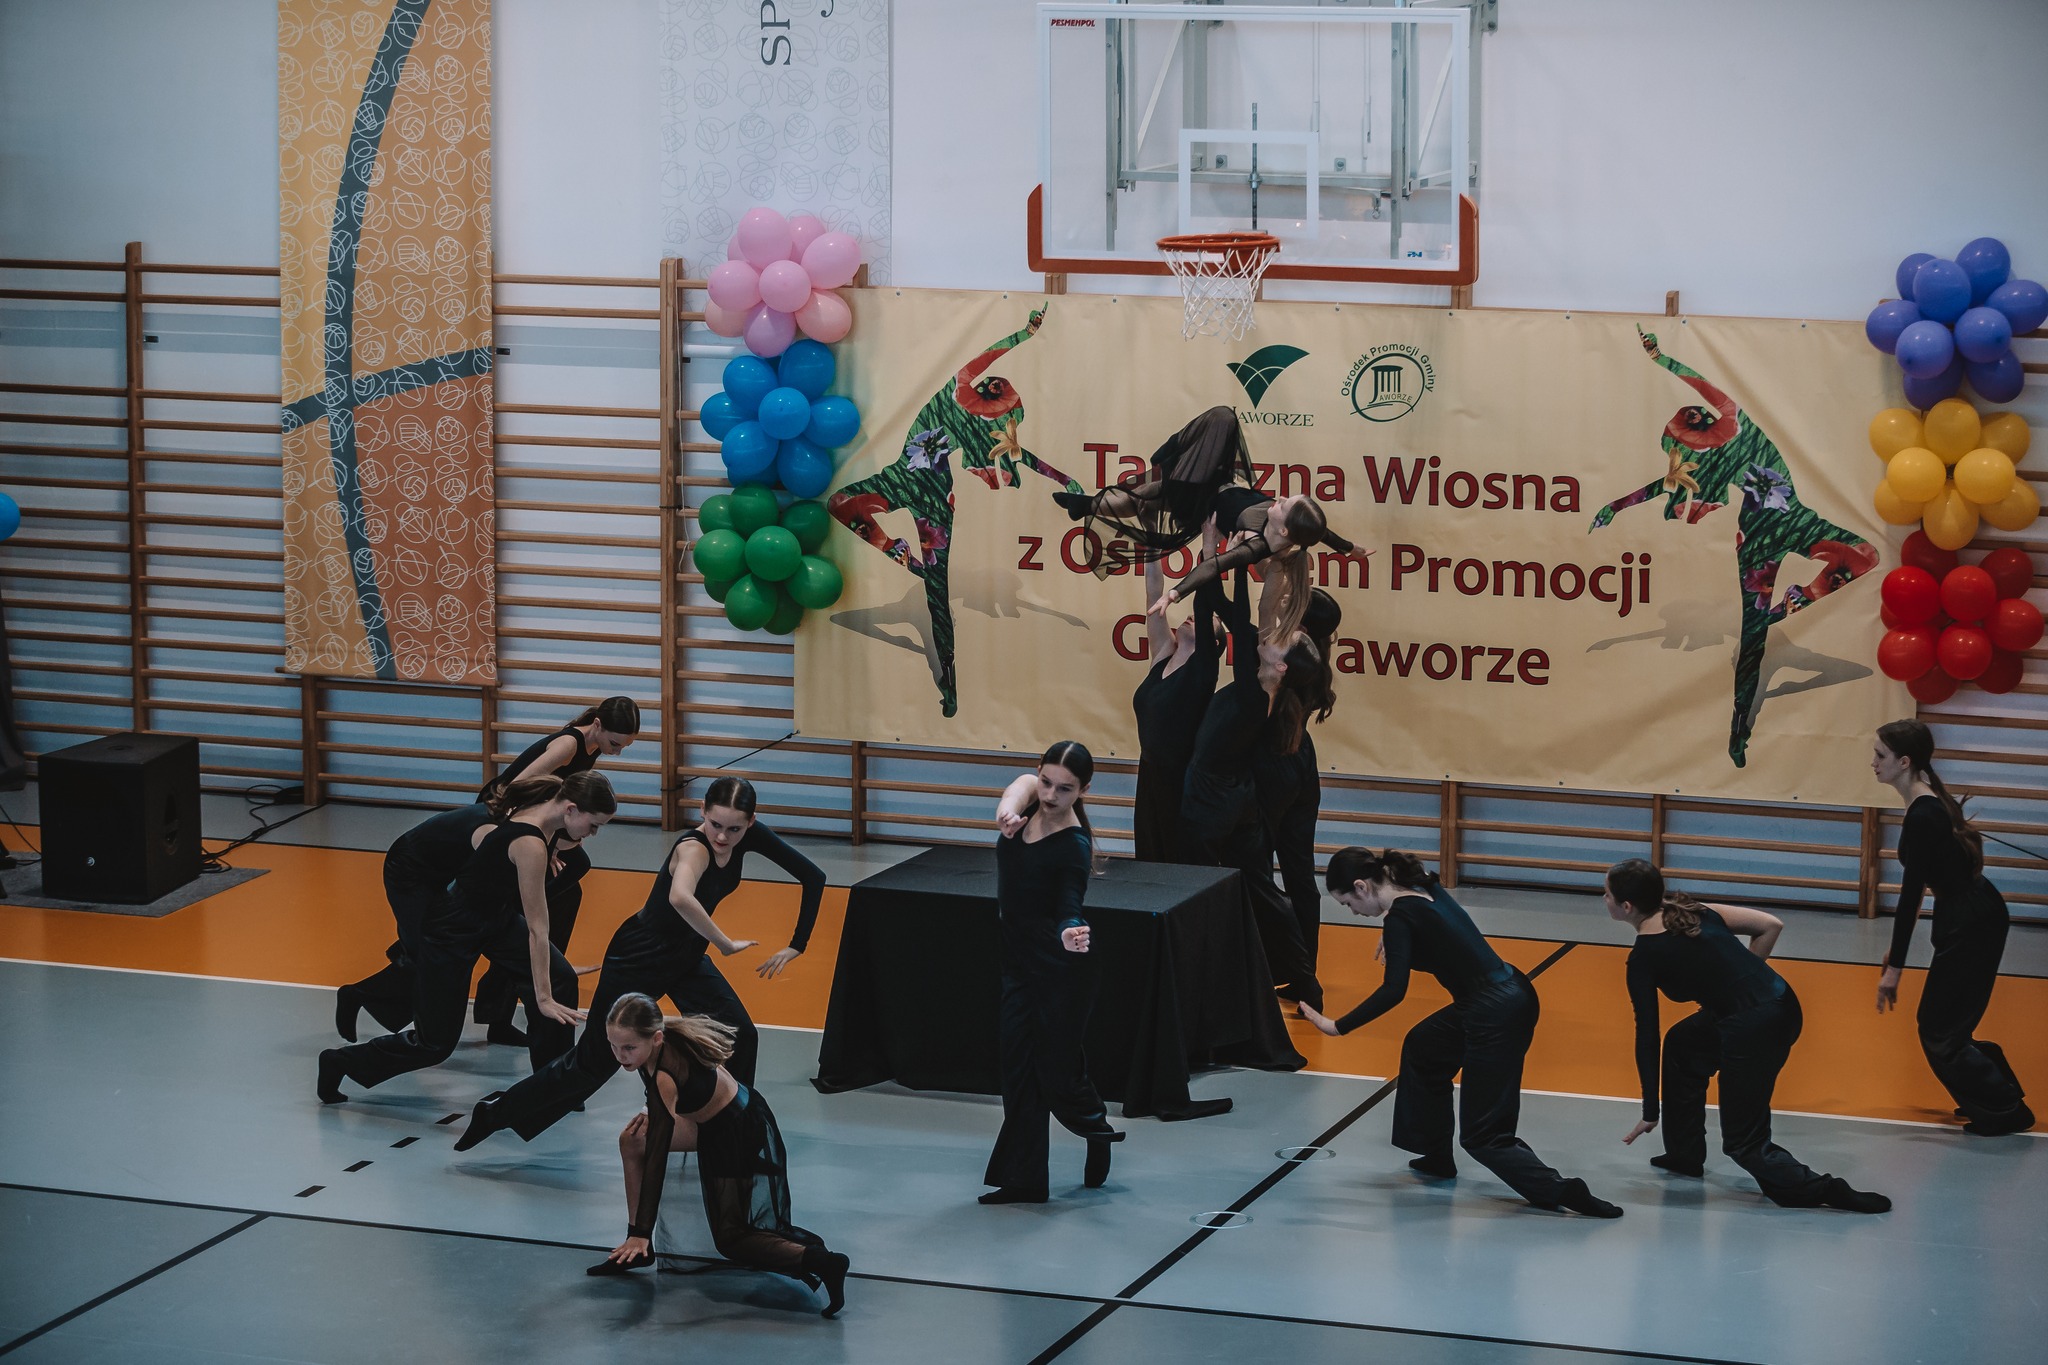 II Taneczna Wiosna z OPGJ. Hala Sportowa JAWORZE. Na zdjęciu zespół taneczny podczas występów.